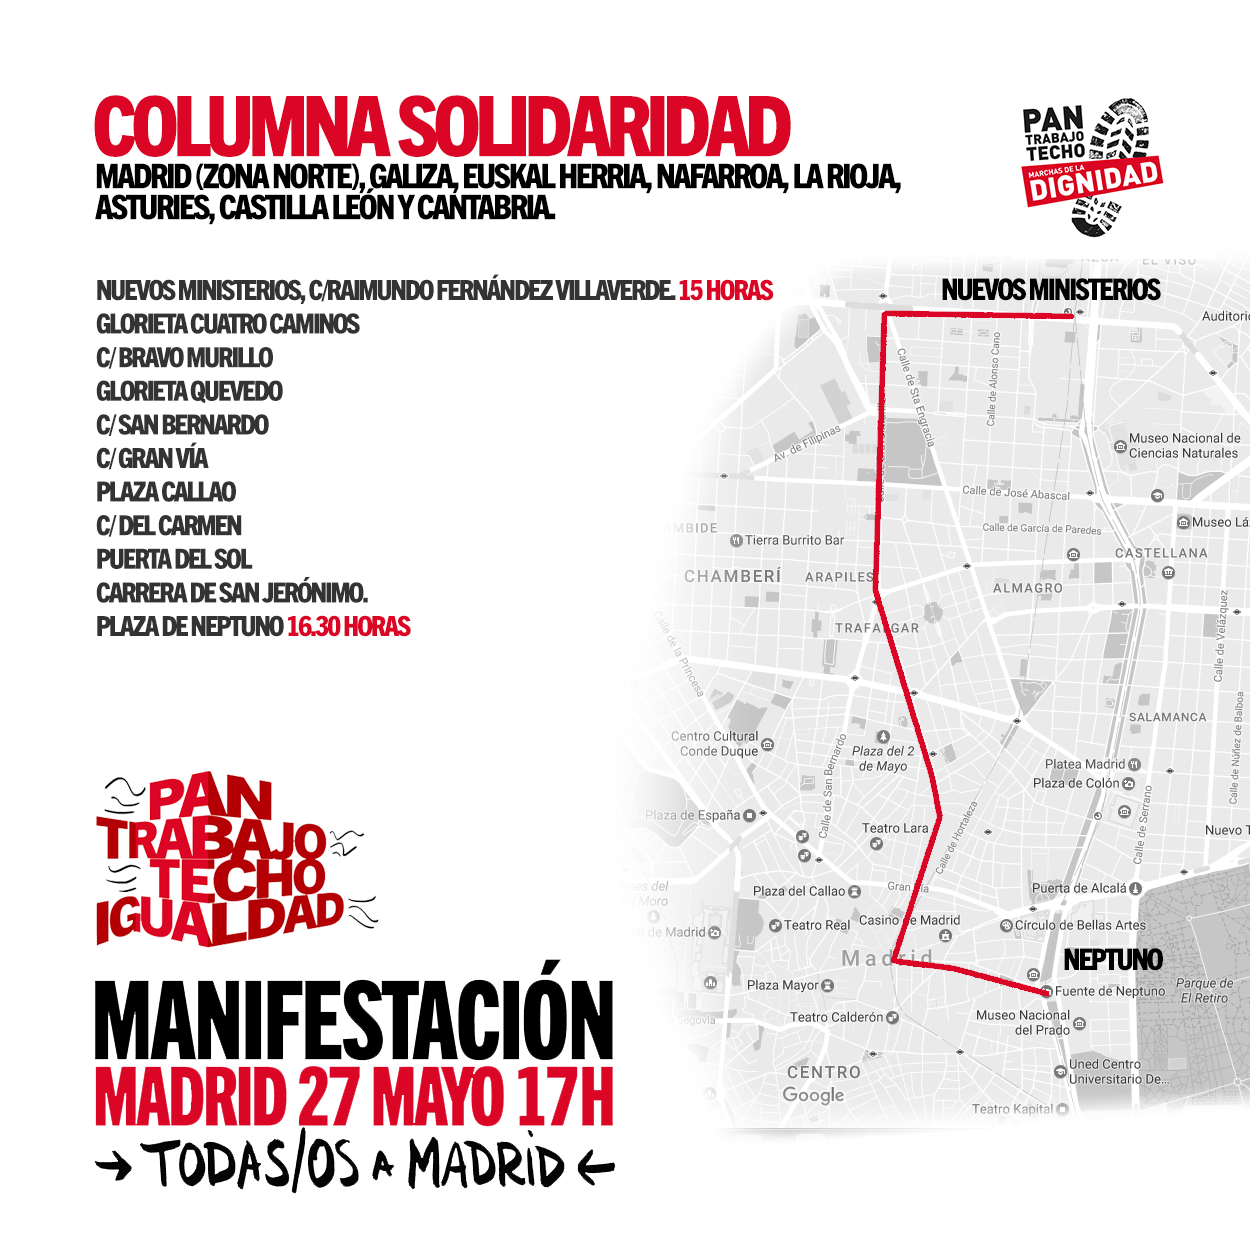 Las Marchas de la Dignidad vuelven a Madrid – Columna Solidaridad (sábado 27 de mayo desde las 15:00)